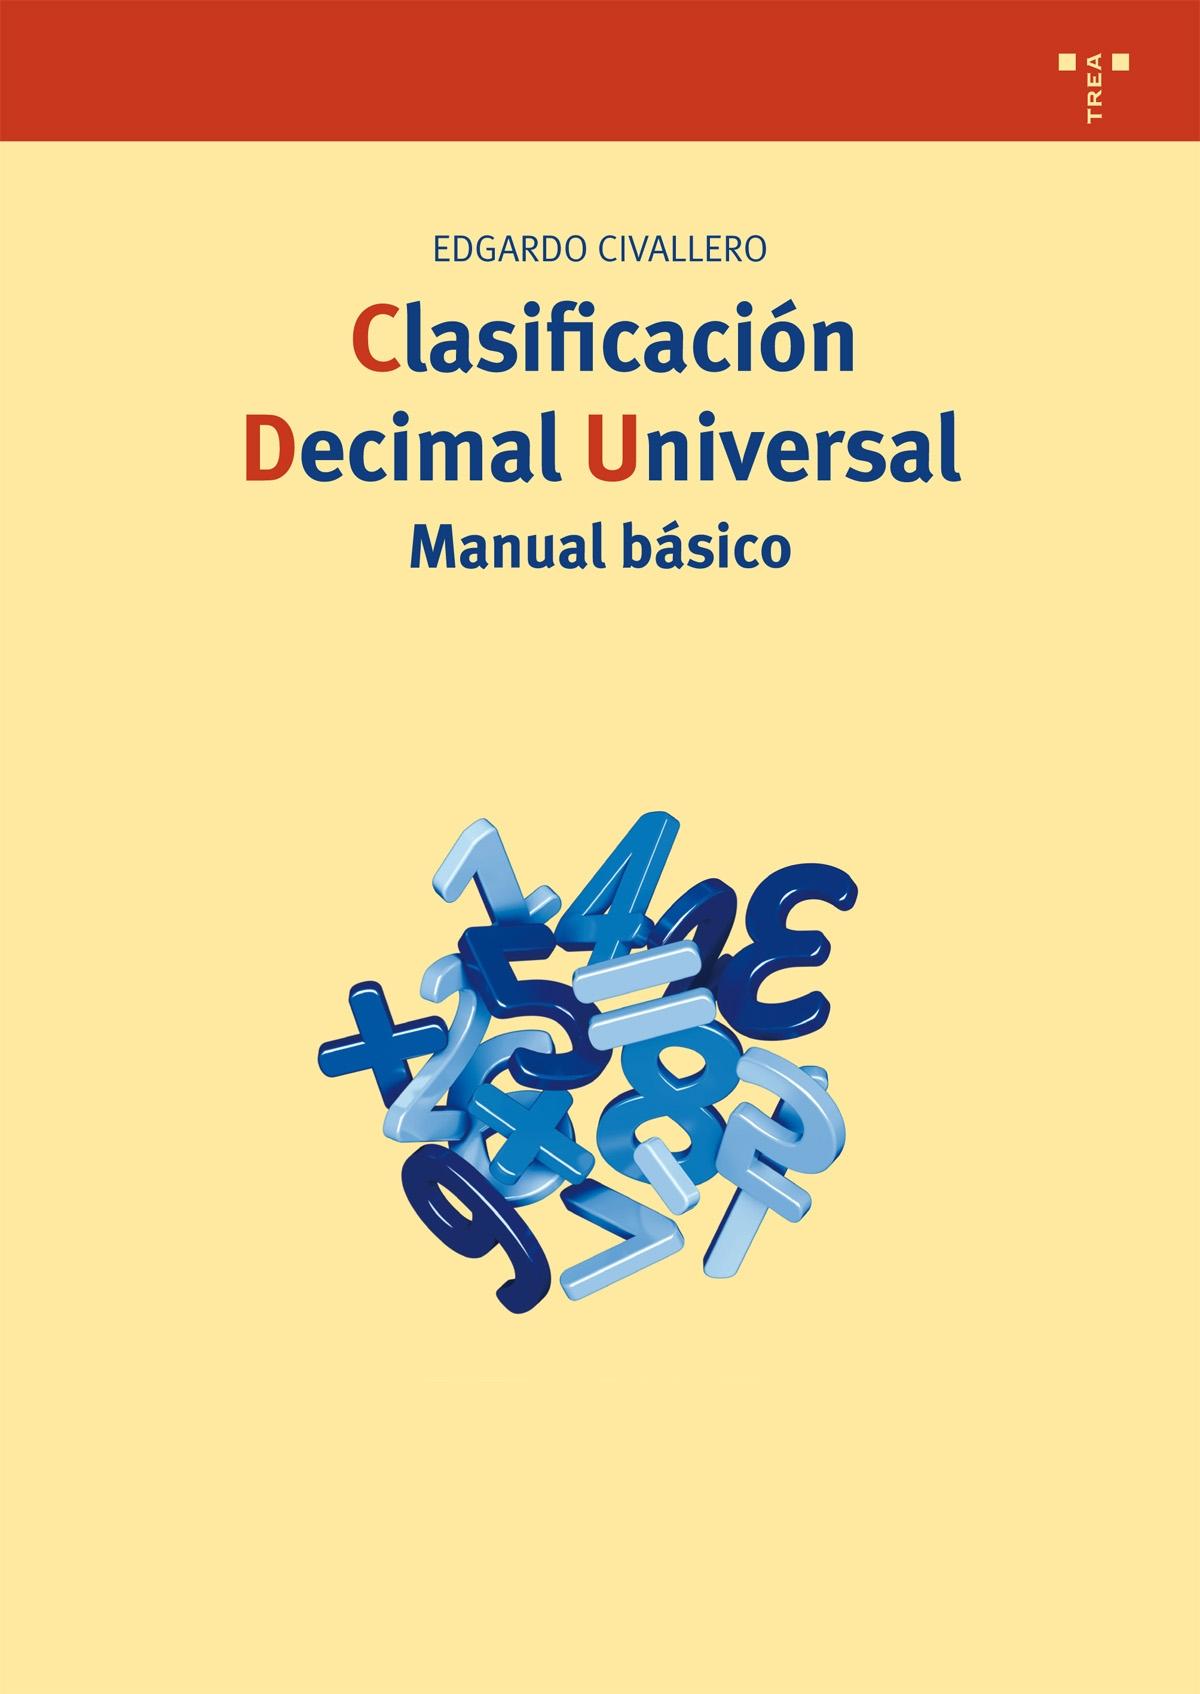 CLASIFICACIÓN DECIMAL UNIVERSAL "MANUAL BÁSICO"